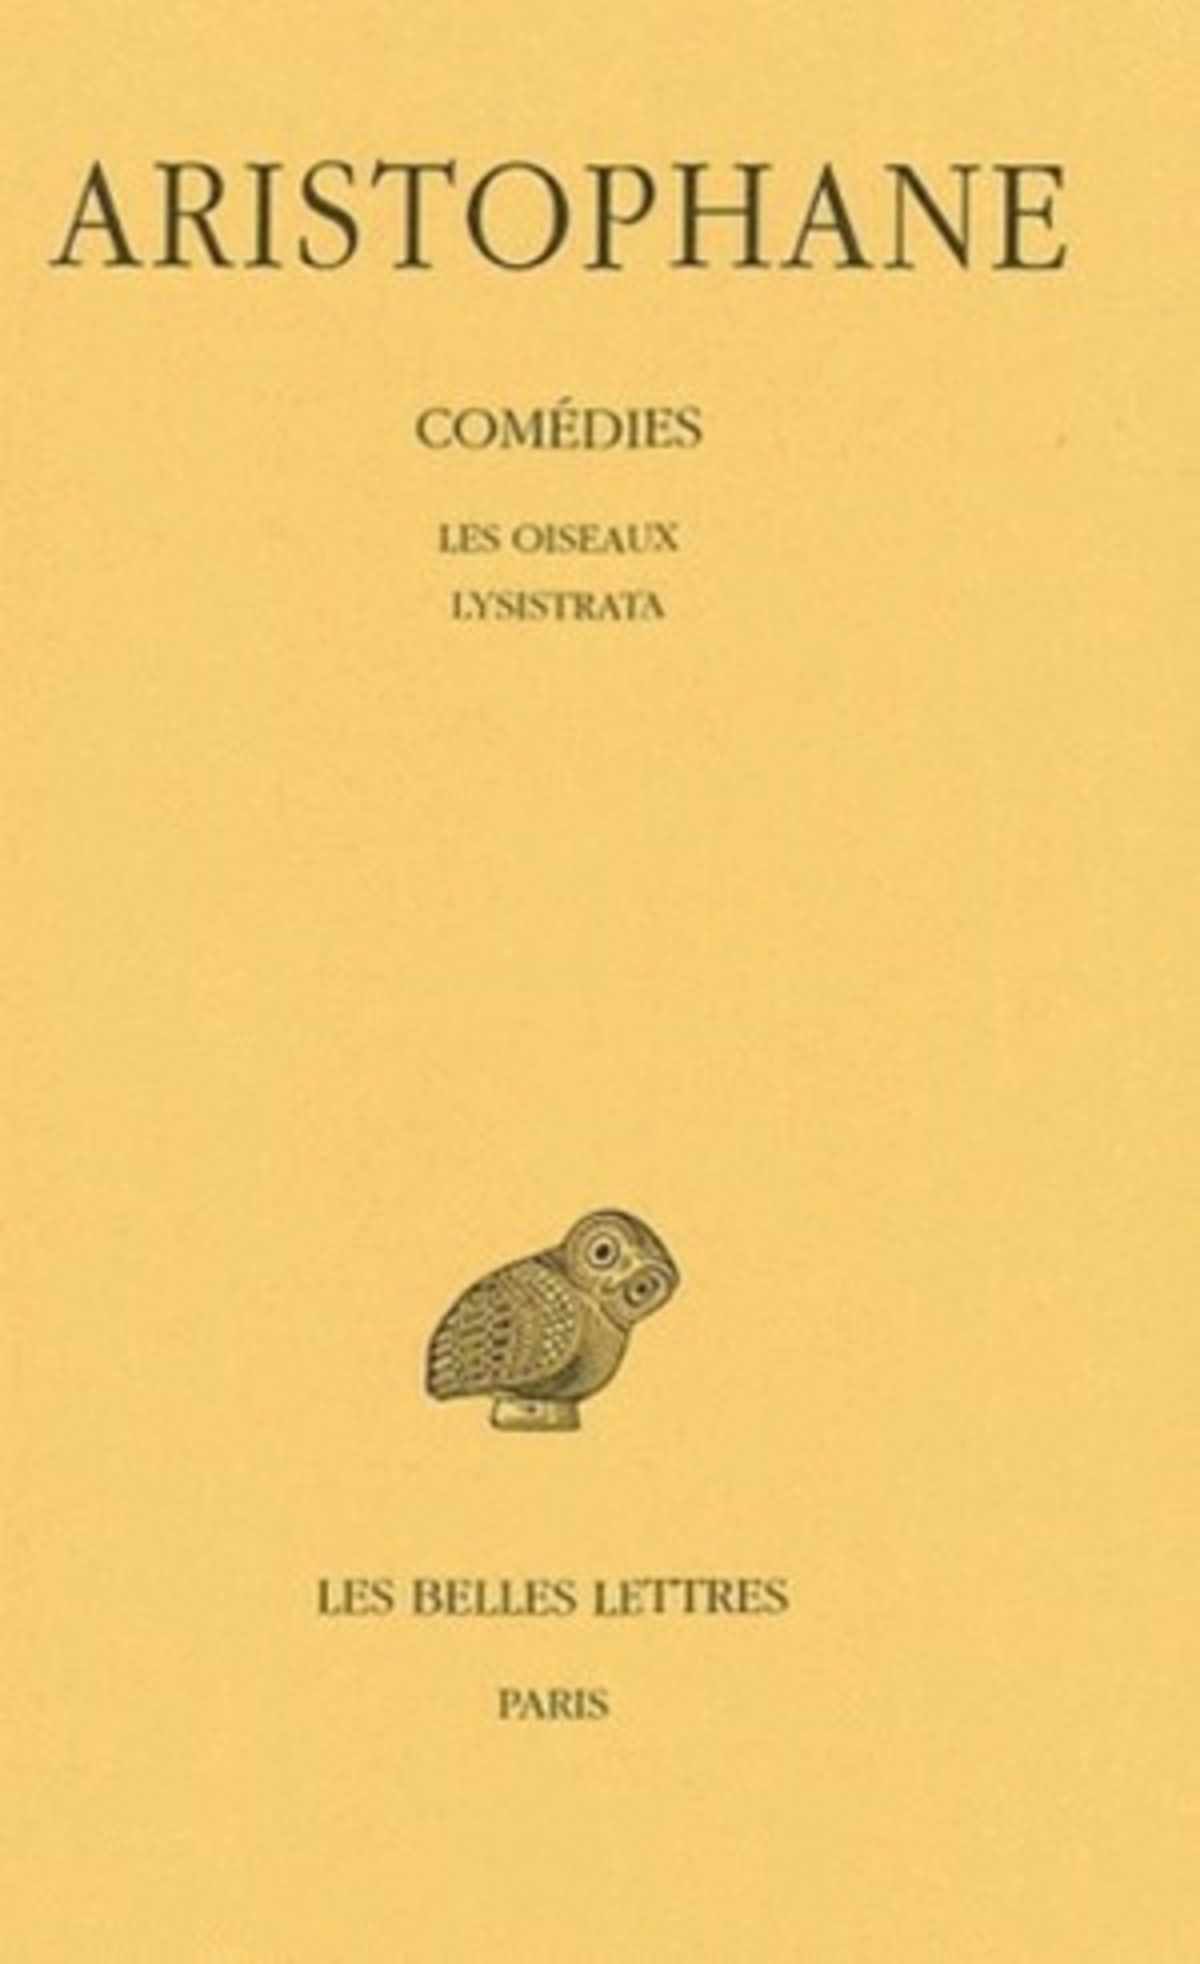 Comédies. Tome III: Les Oiseaux - Lysistrata